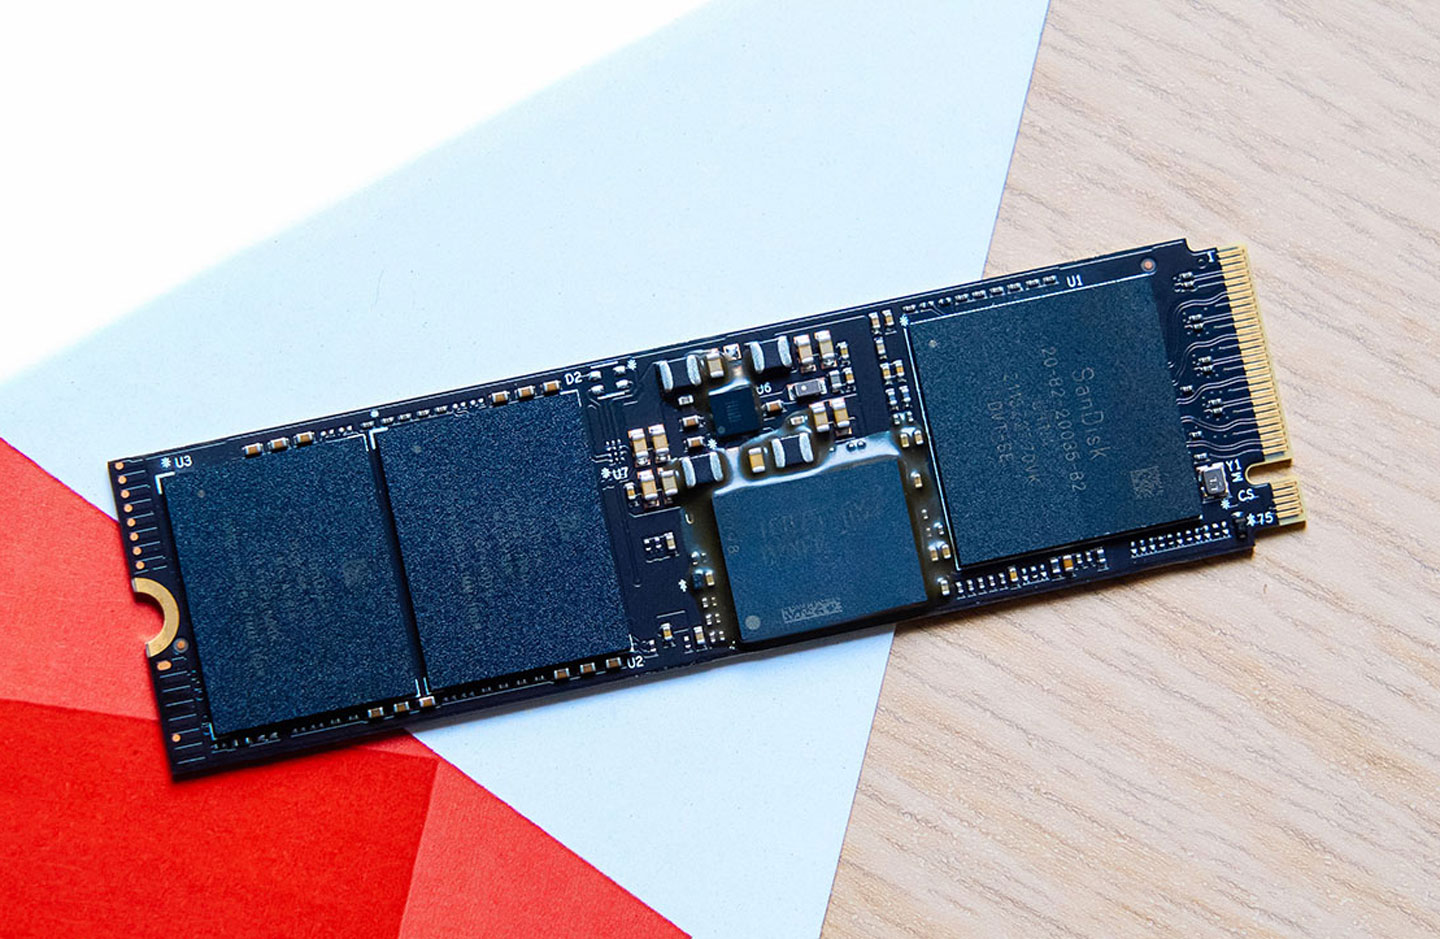 移除面的標籤貼紙，可以看到左側兩組 NAND Flash 晶片，右側則有 DRAM 與控制器元件。